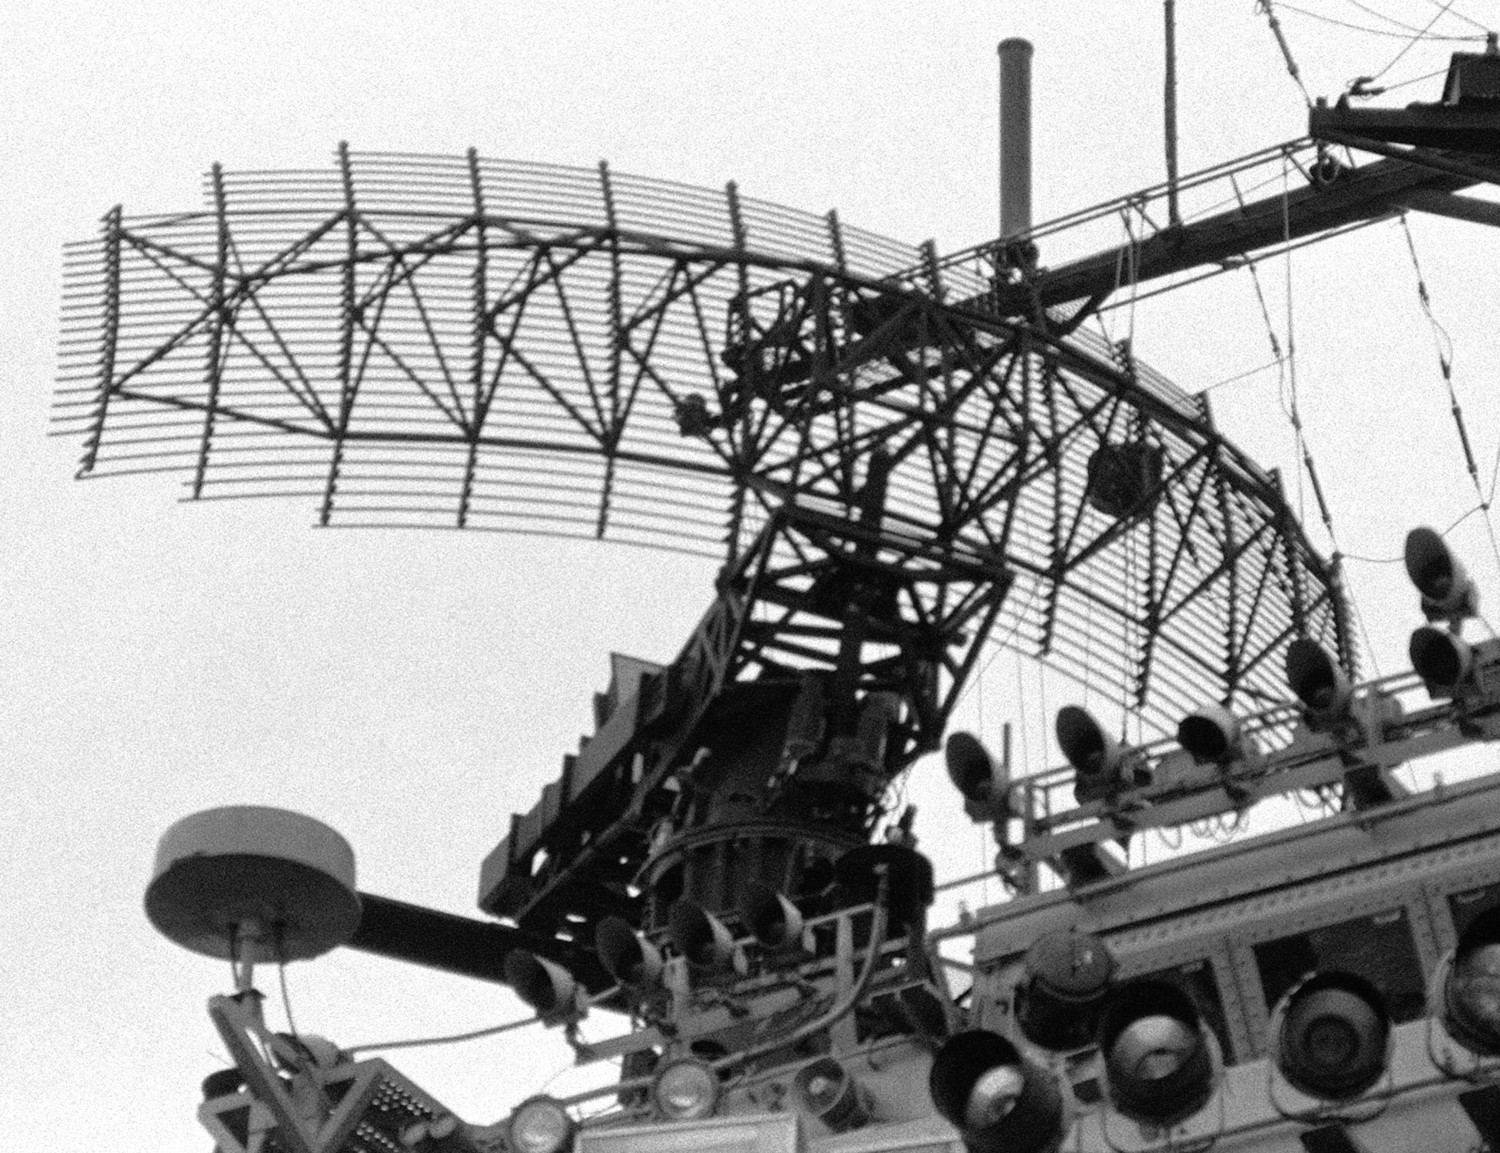 cv-66 uss america kitty hawk class aircraft carrier us navy sps-10 radar 79